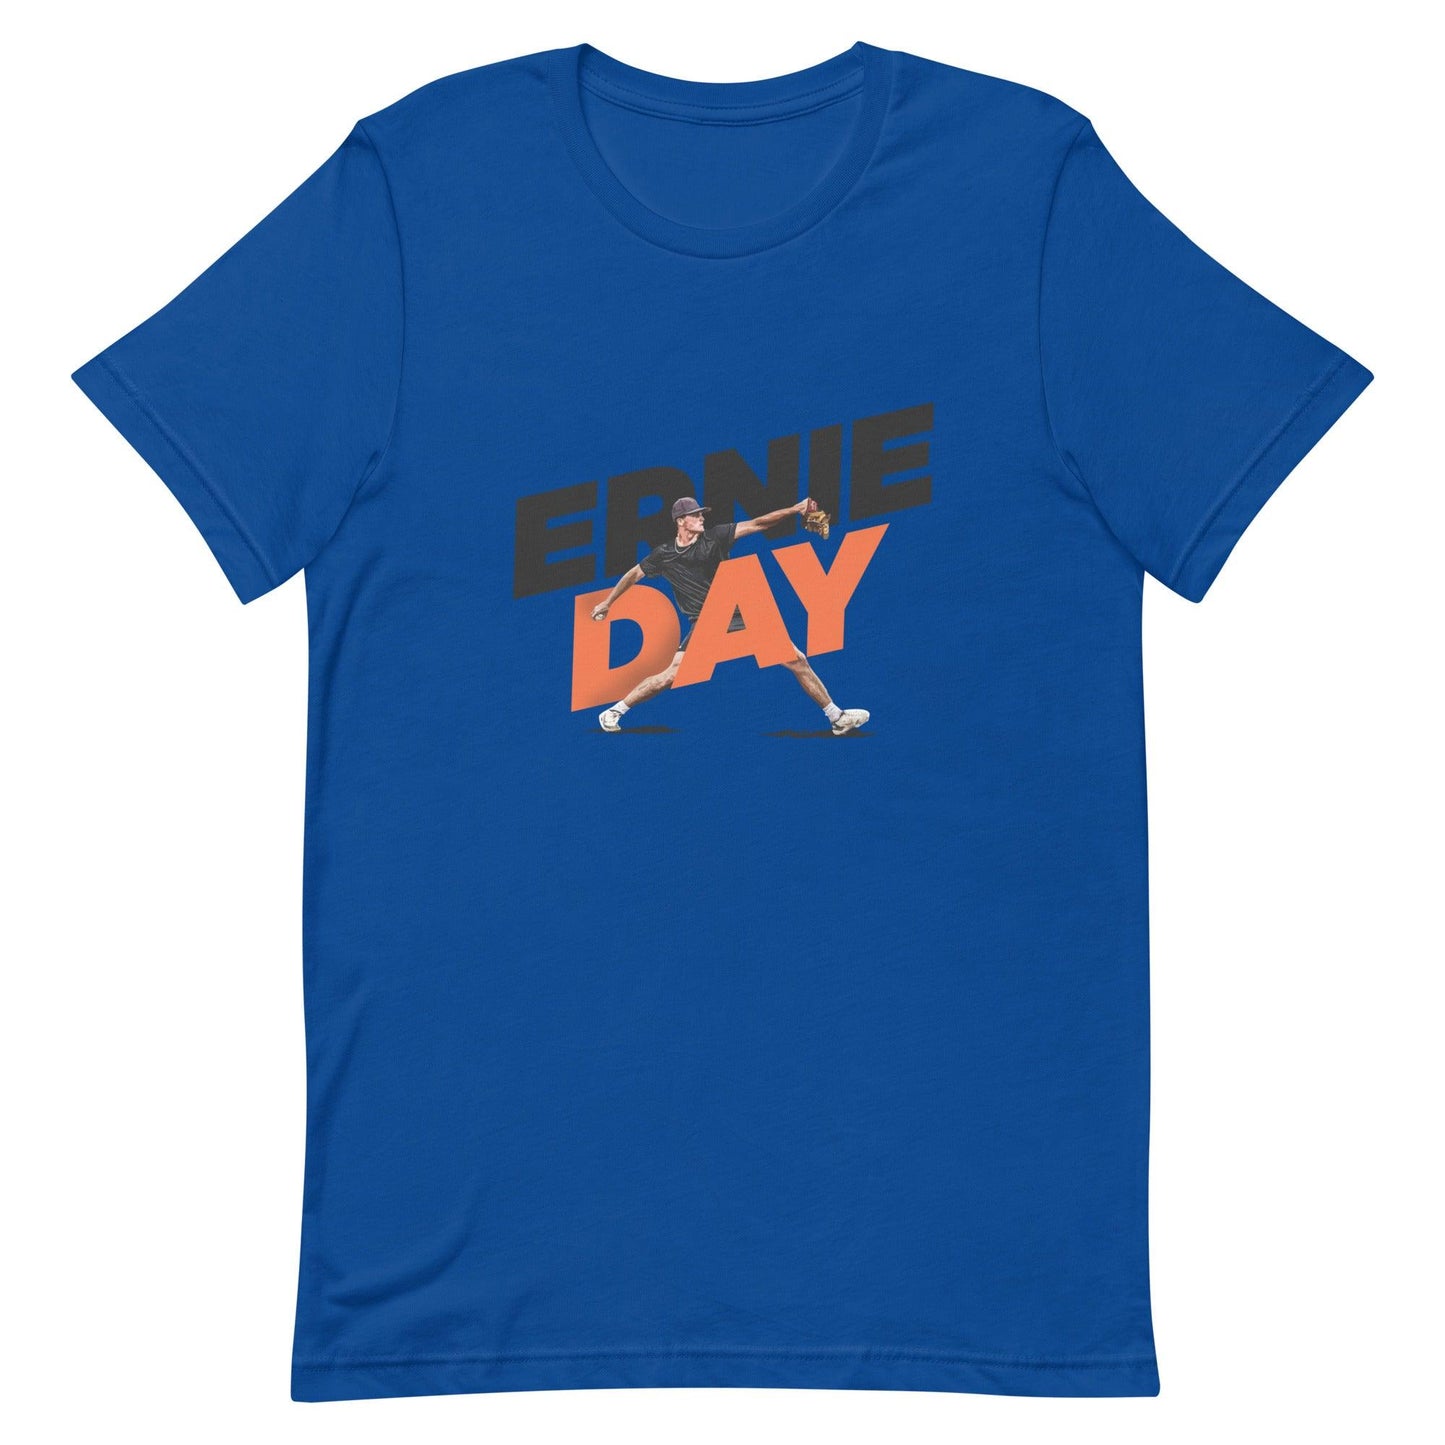 Ernie Day "Gameday" t-shirt - Fan Arch